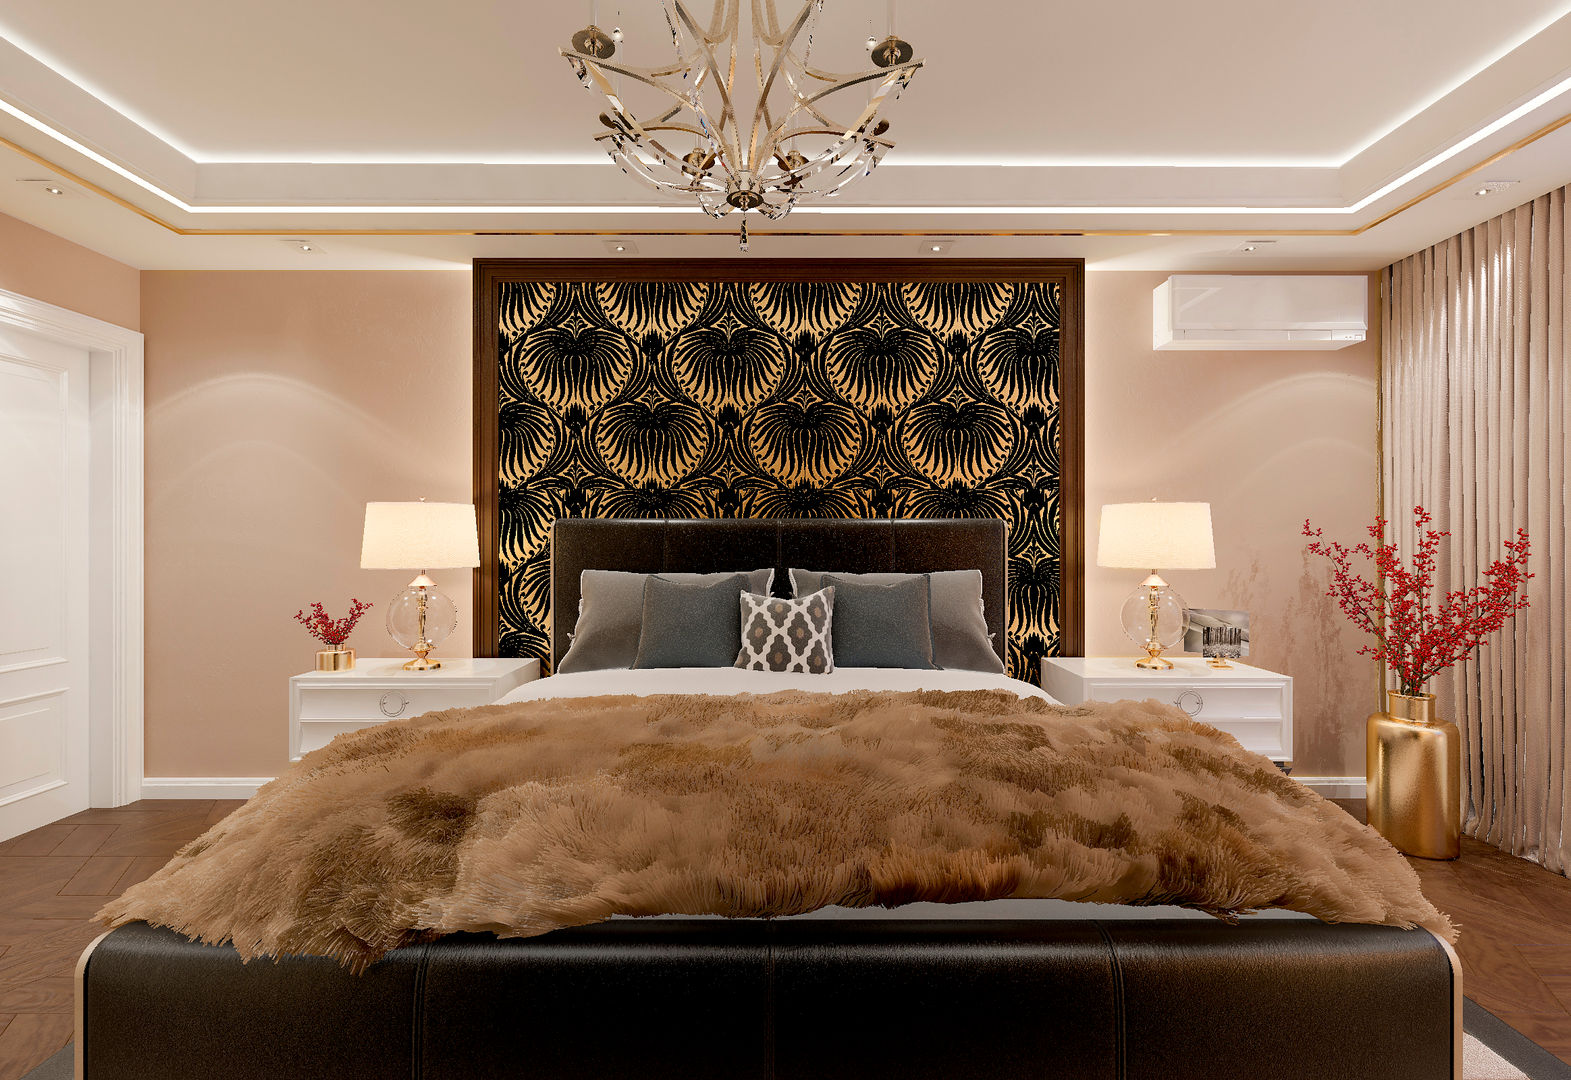 Спальня "Gold & fur", Студия дизайна Дарьи Одарюк Студия дизайна Дарьи Одарюк ห้องนอน